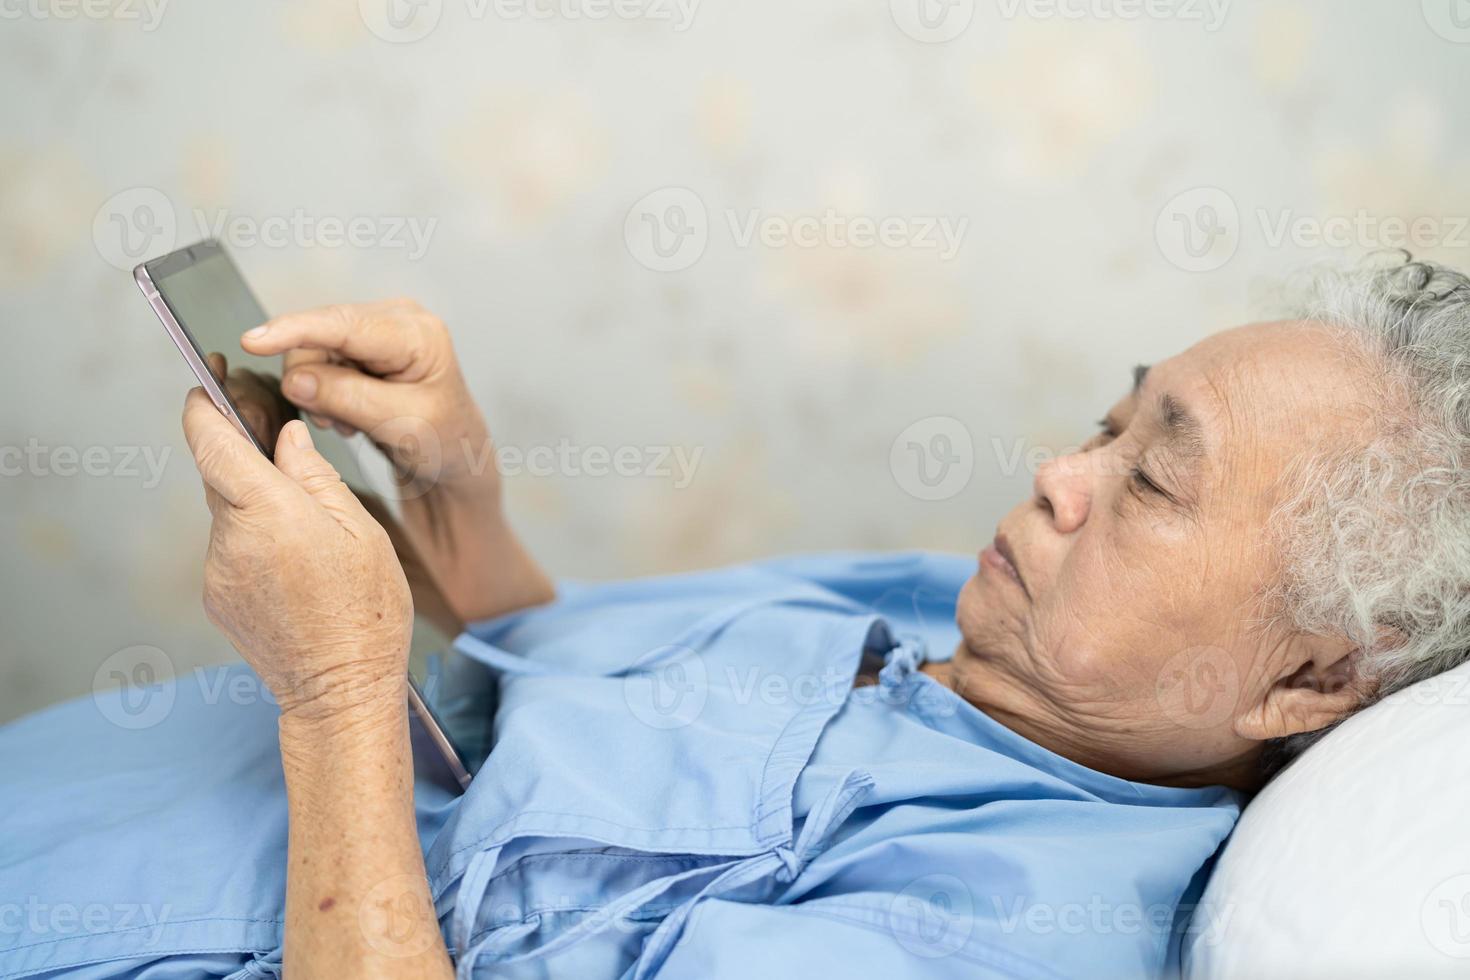 paciente idoso asiático ou idosa segurando um tablet digital nas mãos e lendo e-mails enquanto está sentado na cama na enfermaria do hospital de enfermagem, conceito médico forte e saudável foto